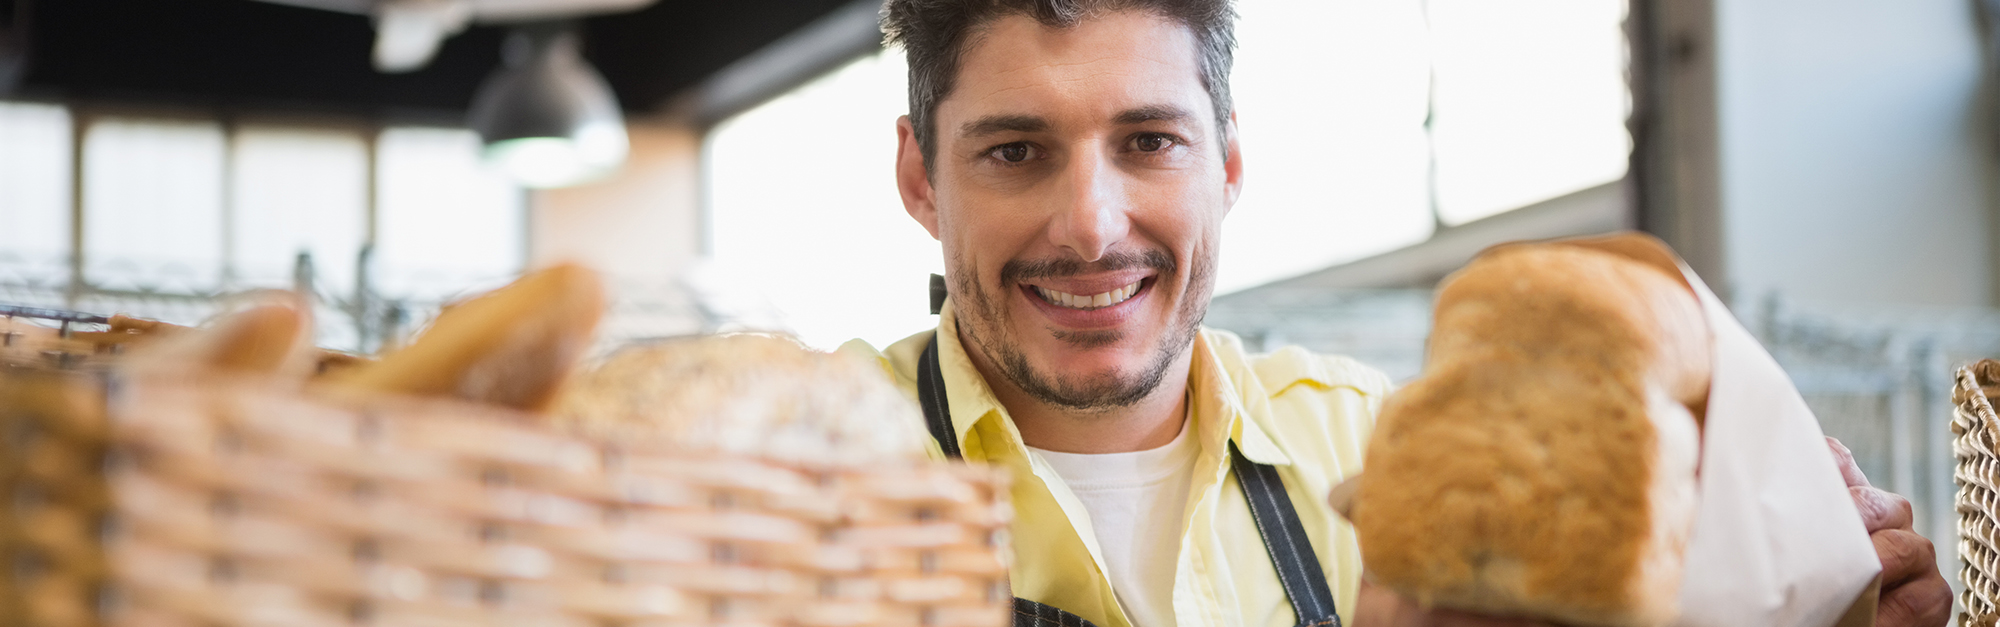 Ein lächelnder Mann über 25 mit dunklen Haaren und Dreitagebart steht hinter einer Bäckertheke und guckt durch Brötchen in die Kamera